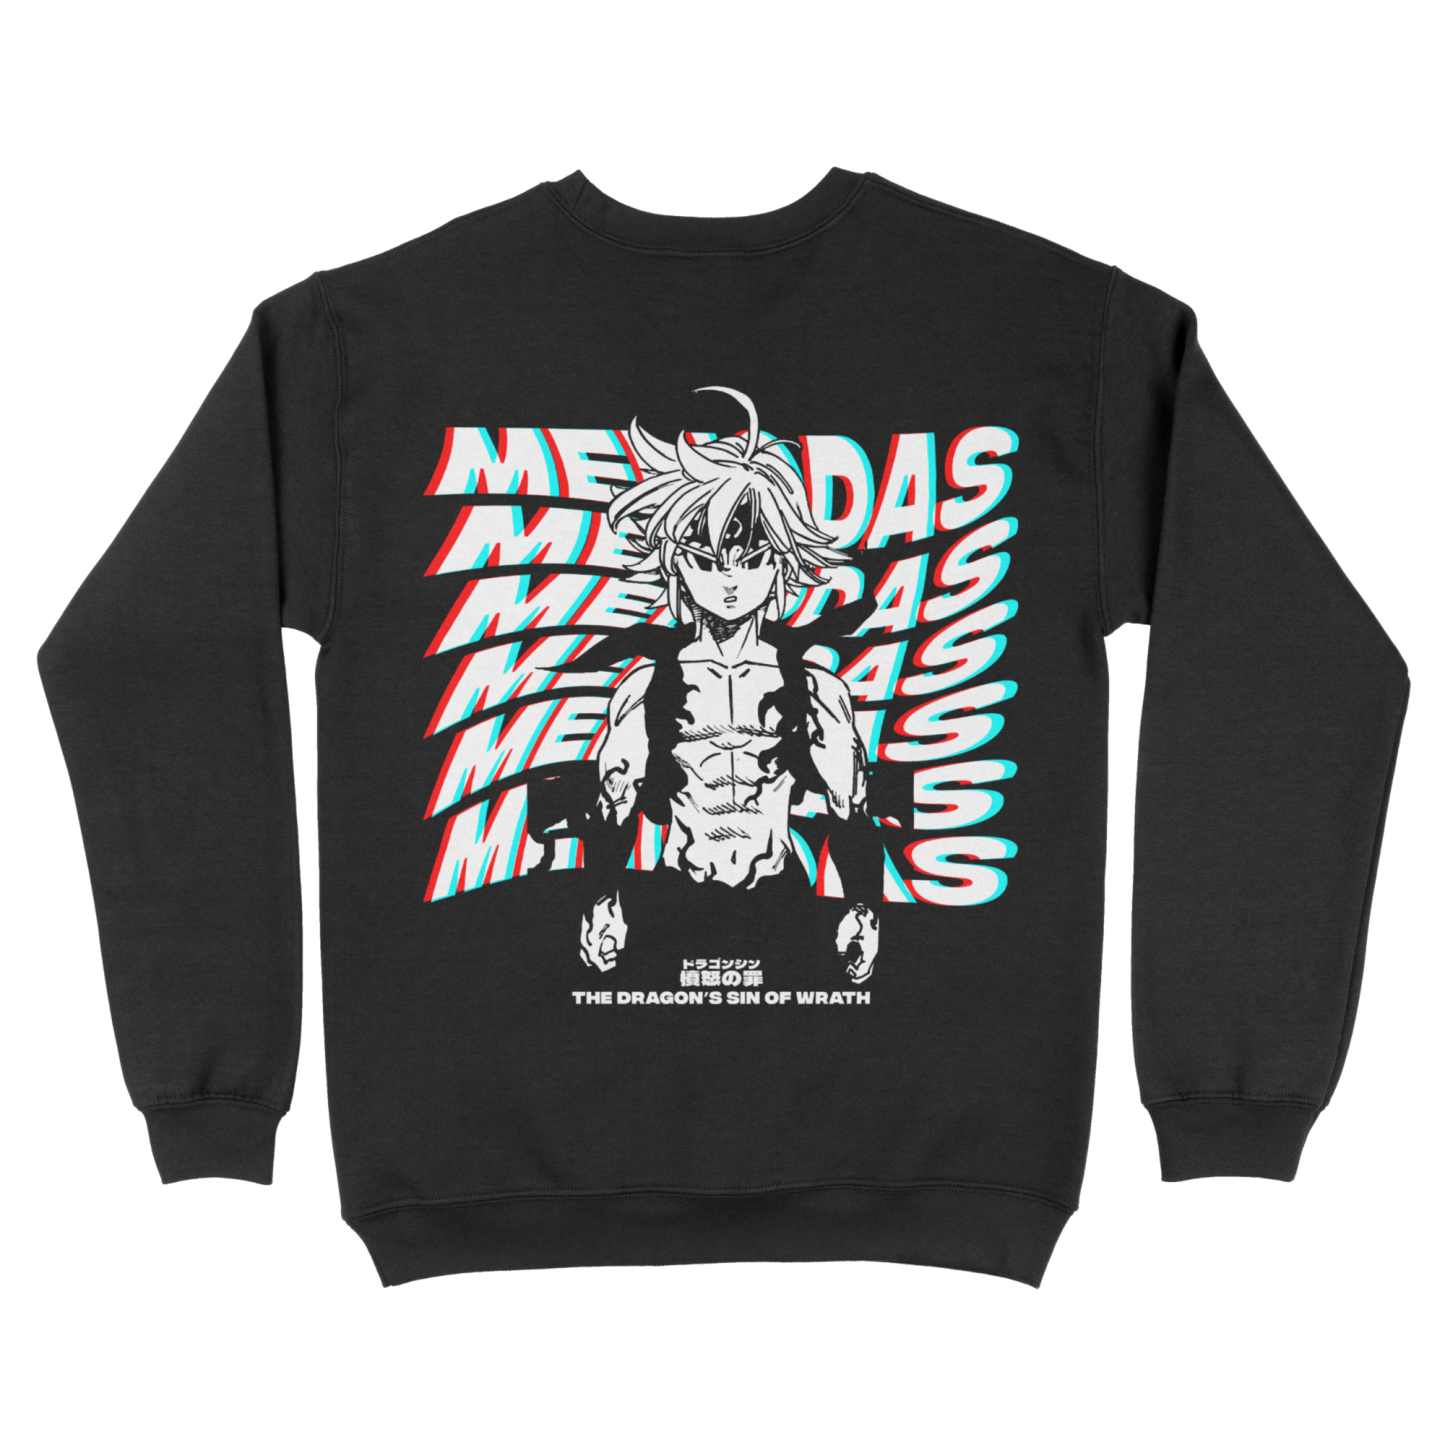 Melliodas Seven Deadly Sins | Sweatshirt